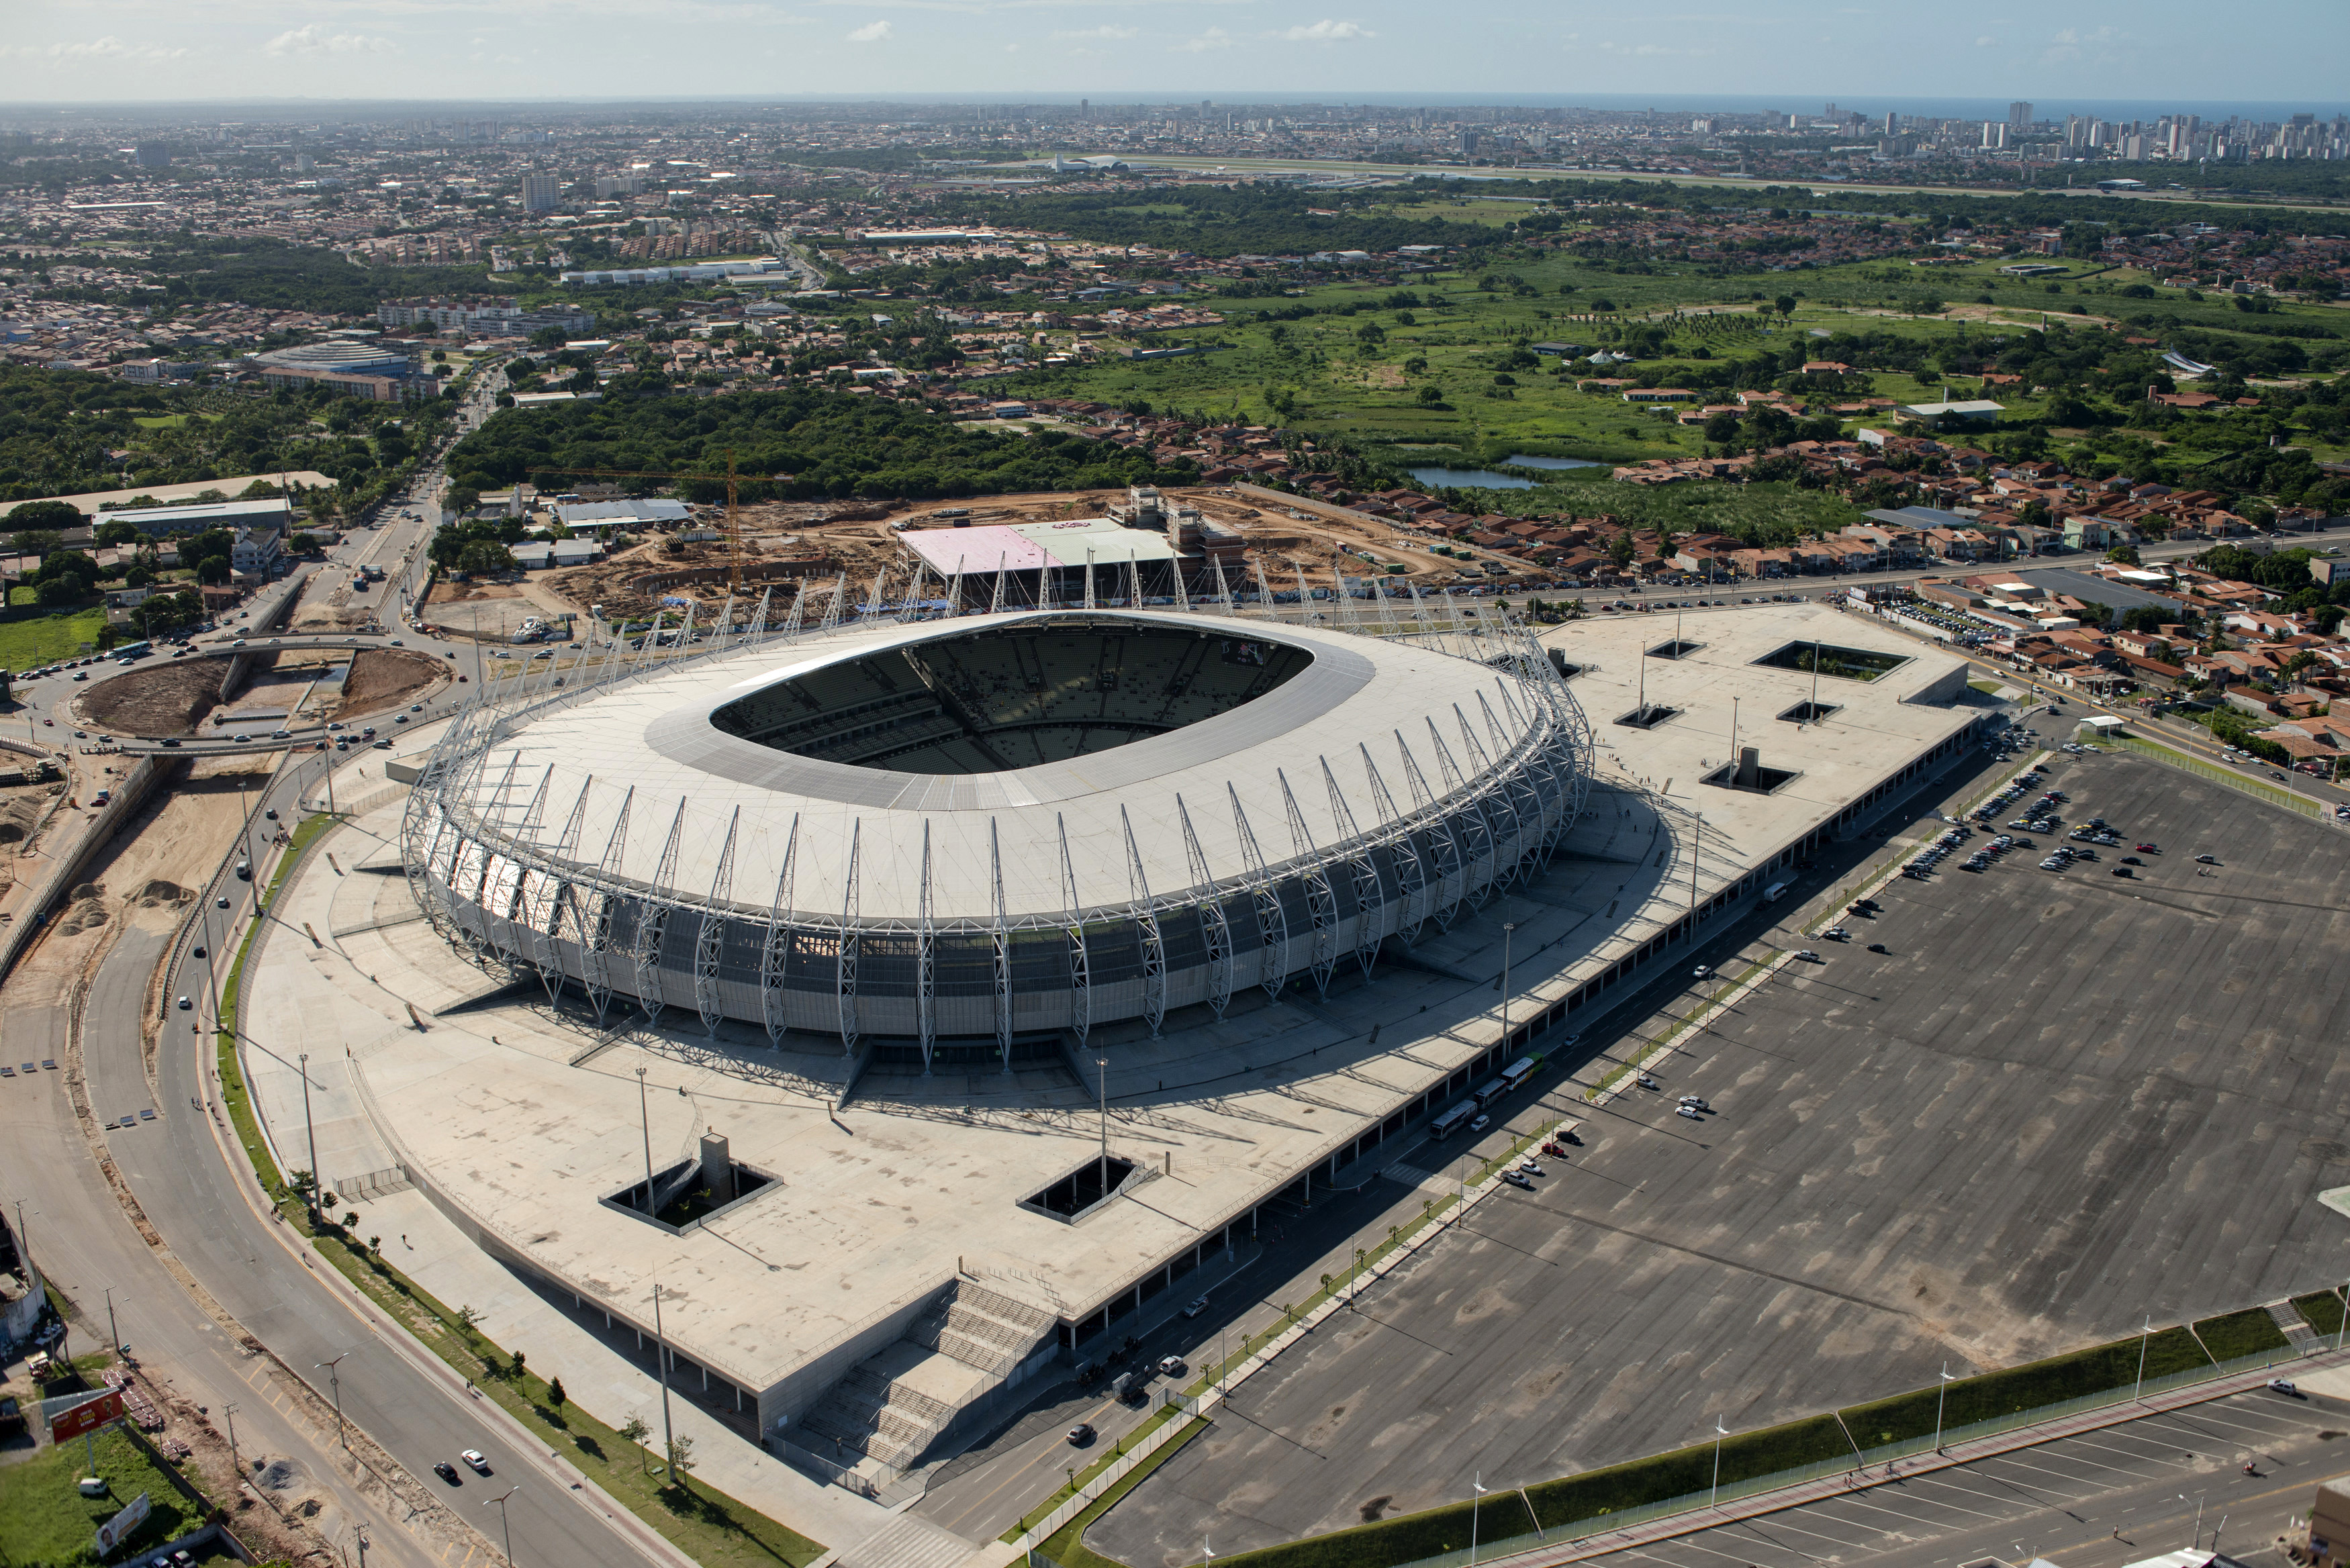 Estadio Castelao
                              
                              City: Fortaleza
                              
                              Constructed: 1973
                              
                              Capactiy: 60,300